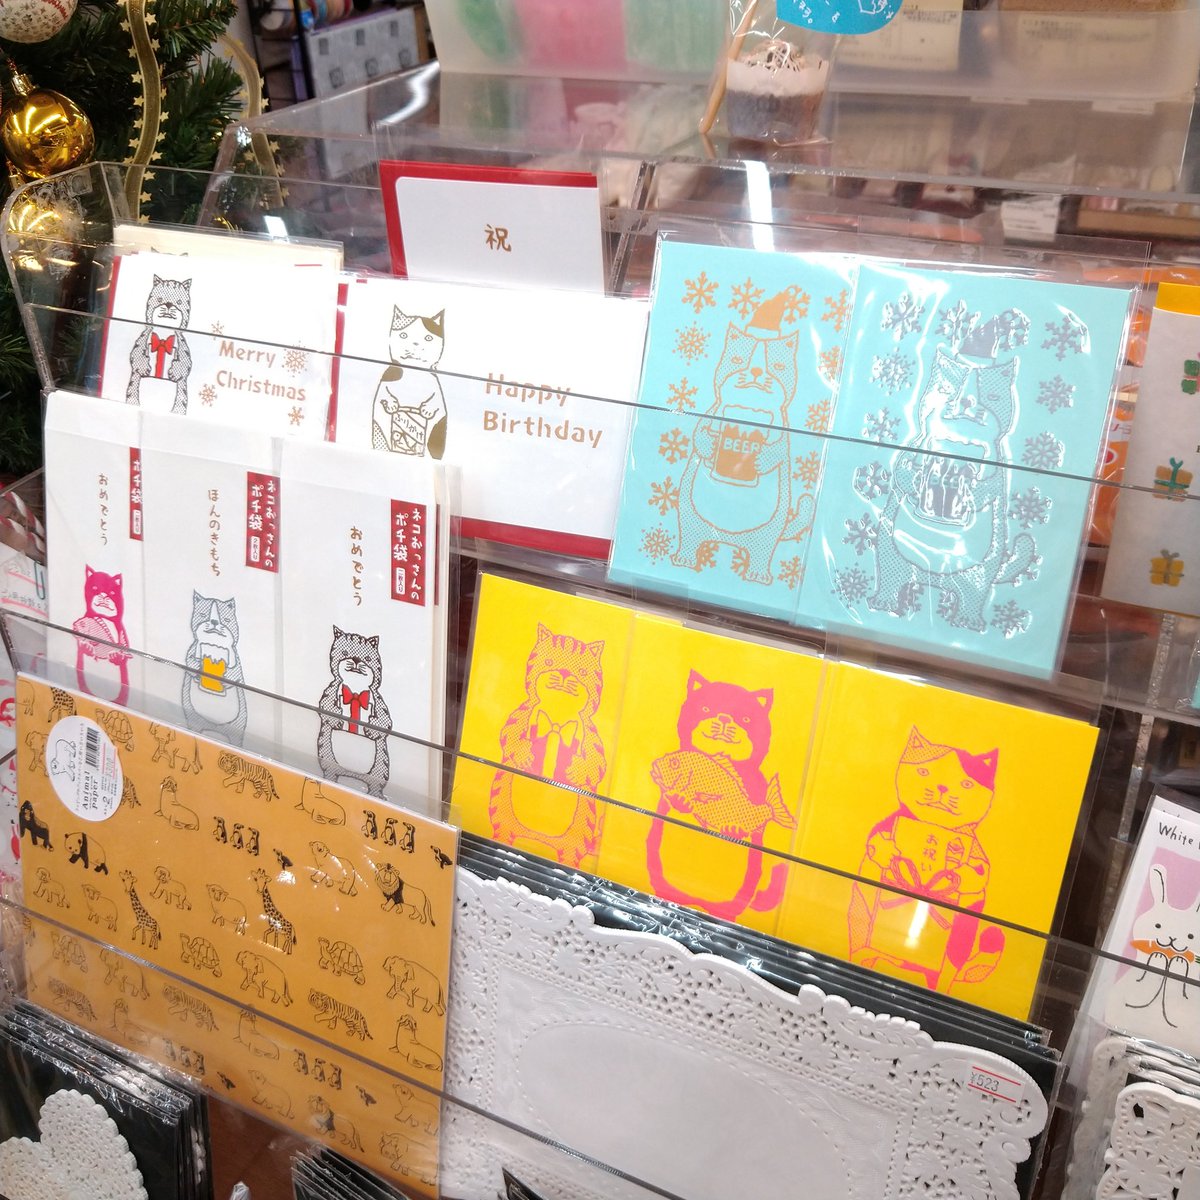 Zucoasobi ものづくりユニット 阪神芦屋駅から徒歩すぐの製菓材料店 ベイクベイス Babke Base にてzucoasobiのペーパーアイテムを一部期間限定で取り扱い頂いております お菓子の材料や道具がそろう素敵なお店 なので クリスマスにむけてケーキや